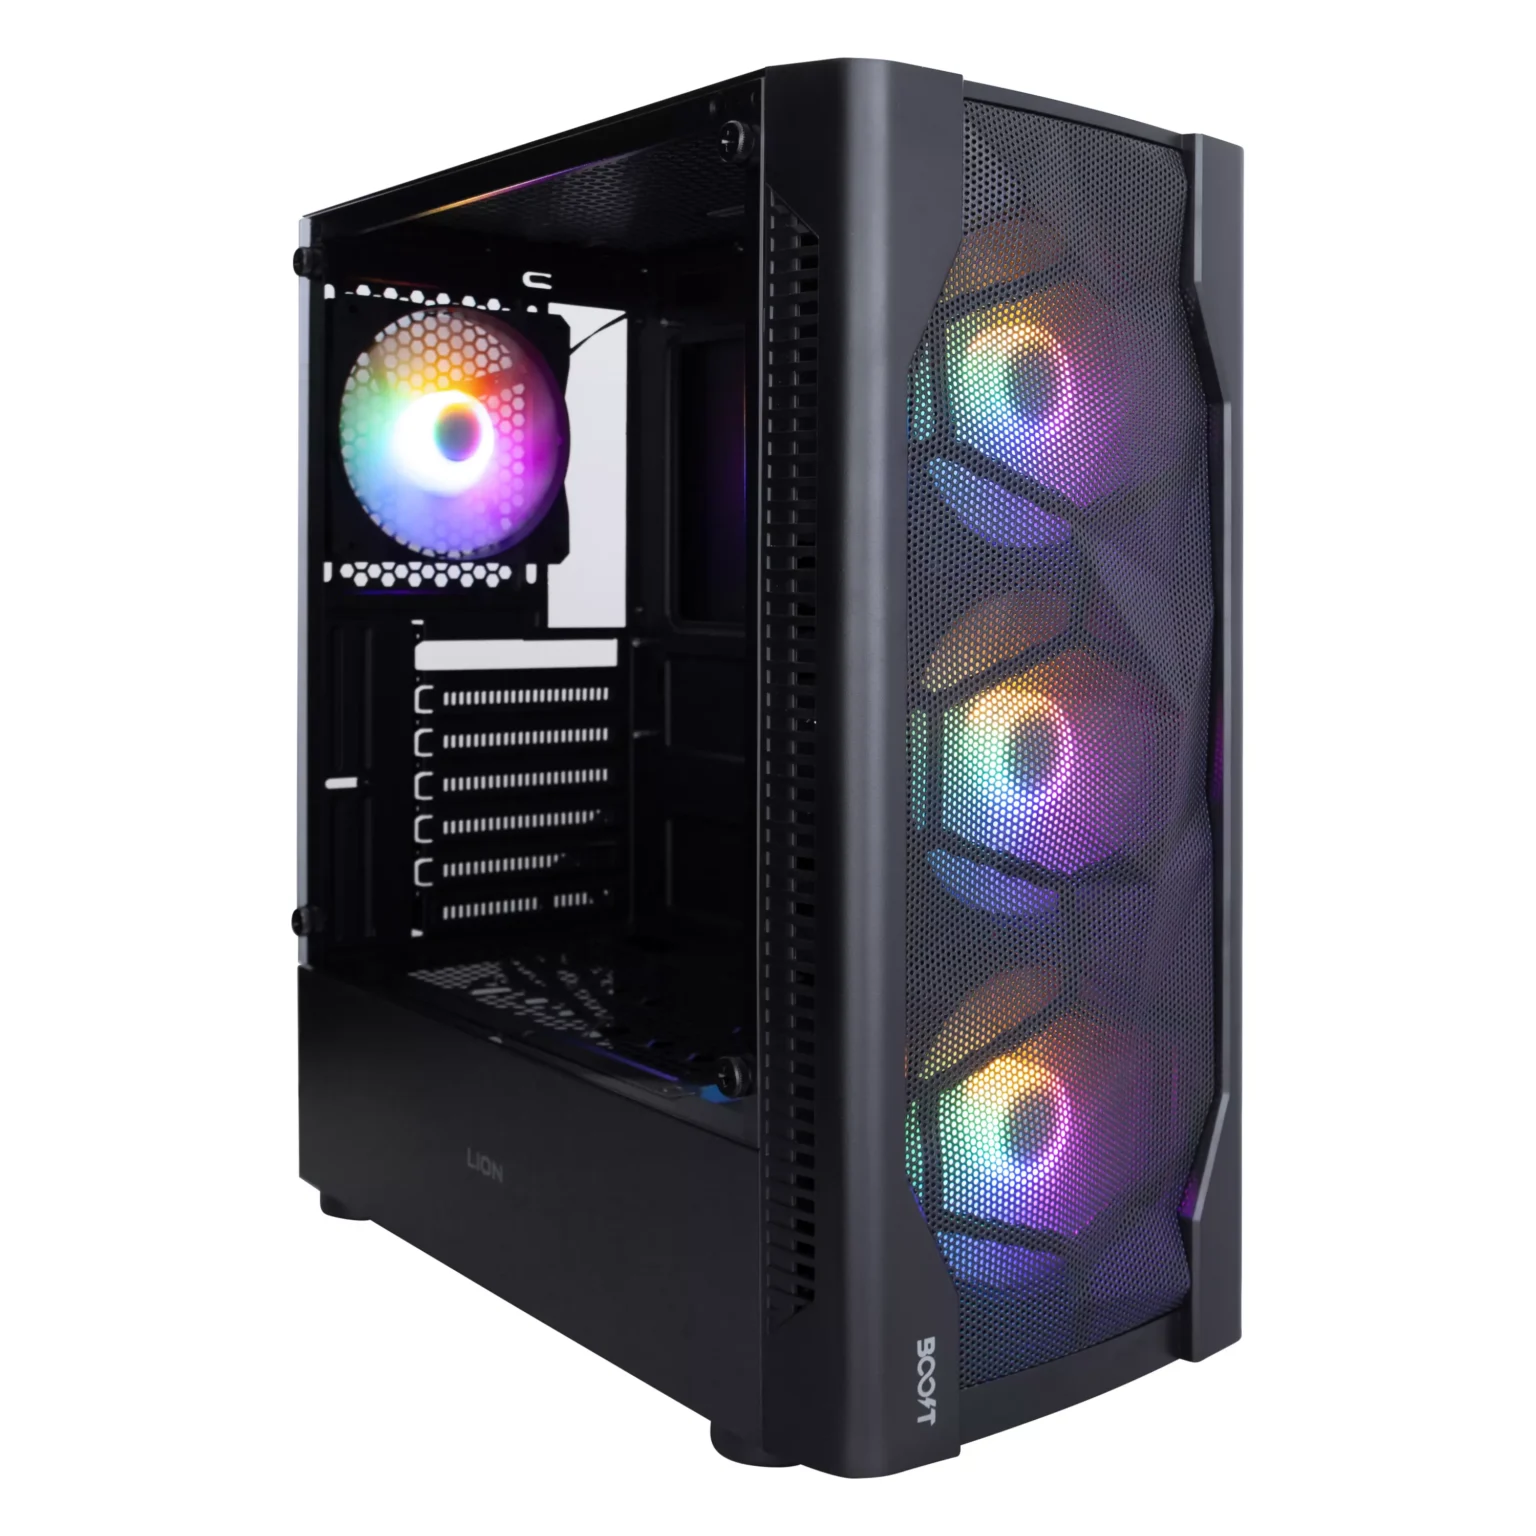 Boost Lion PC Case with 4 RGB Fans - Black